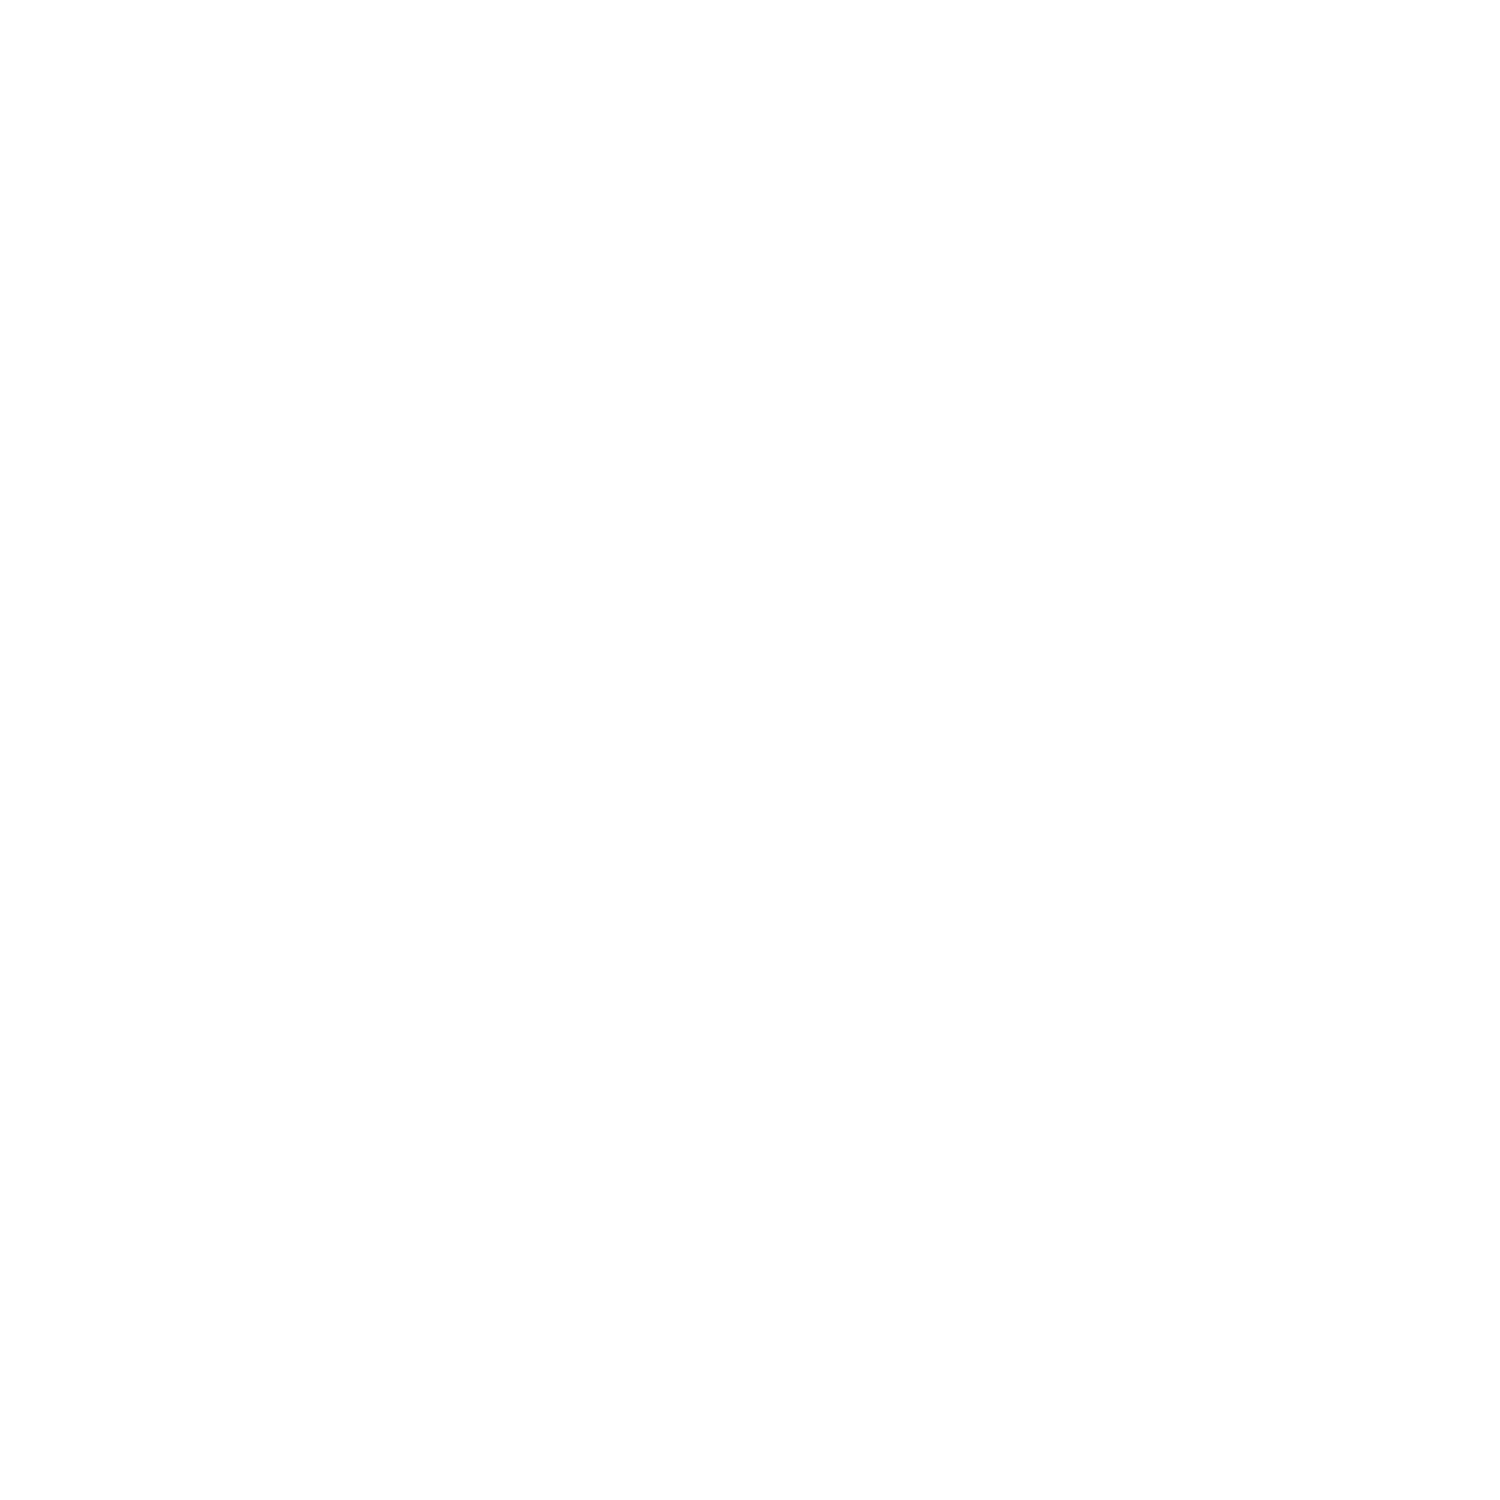 MPP Membership